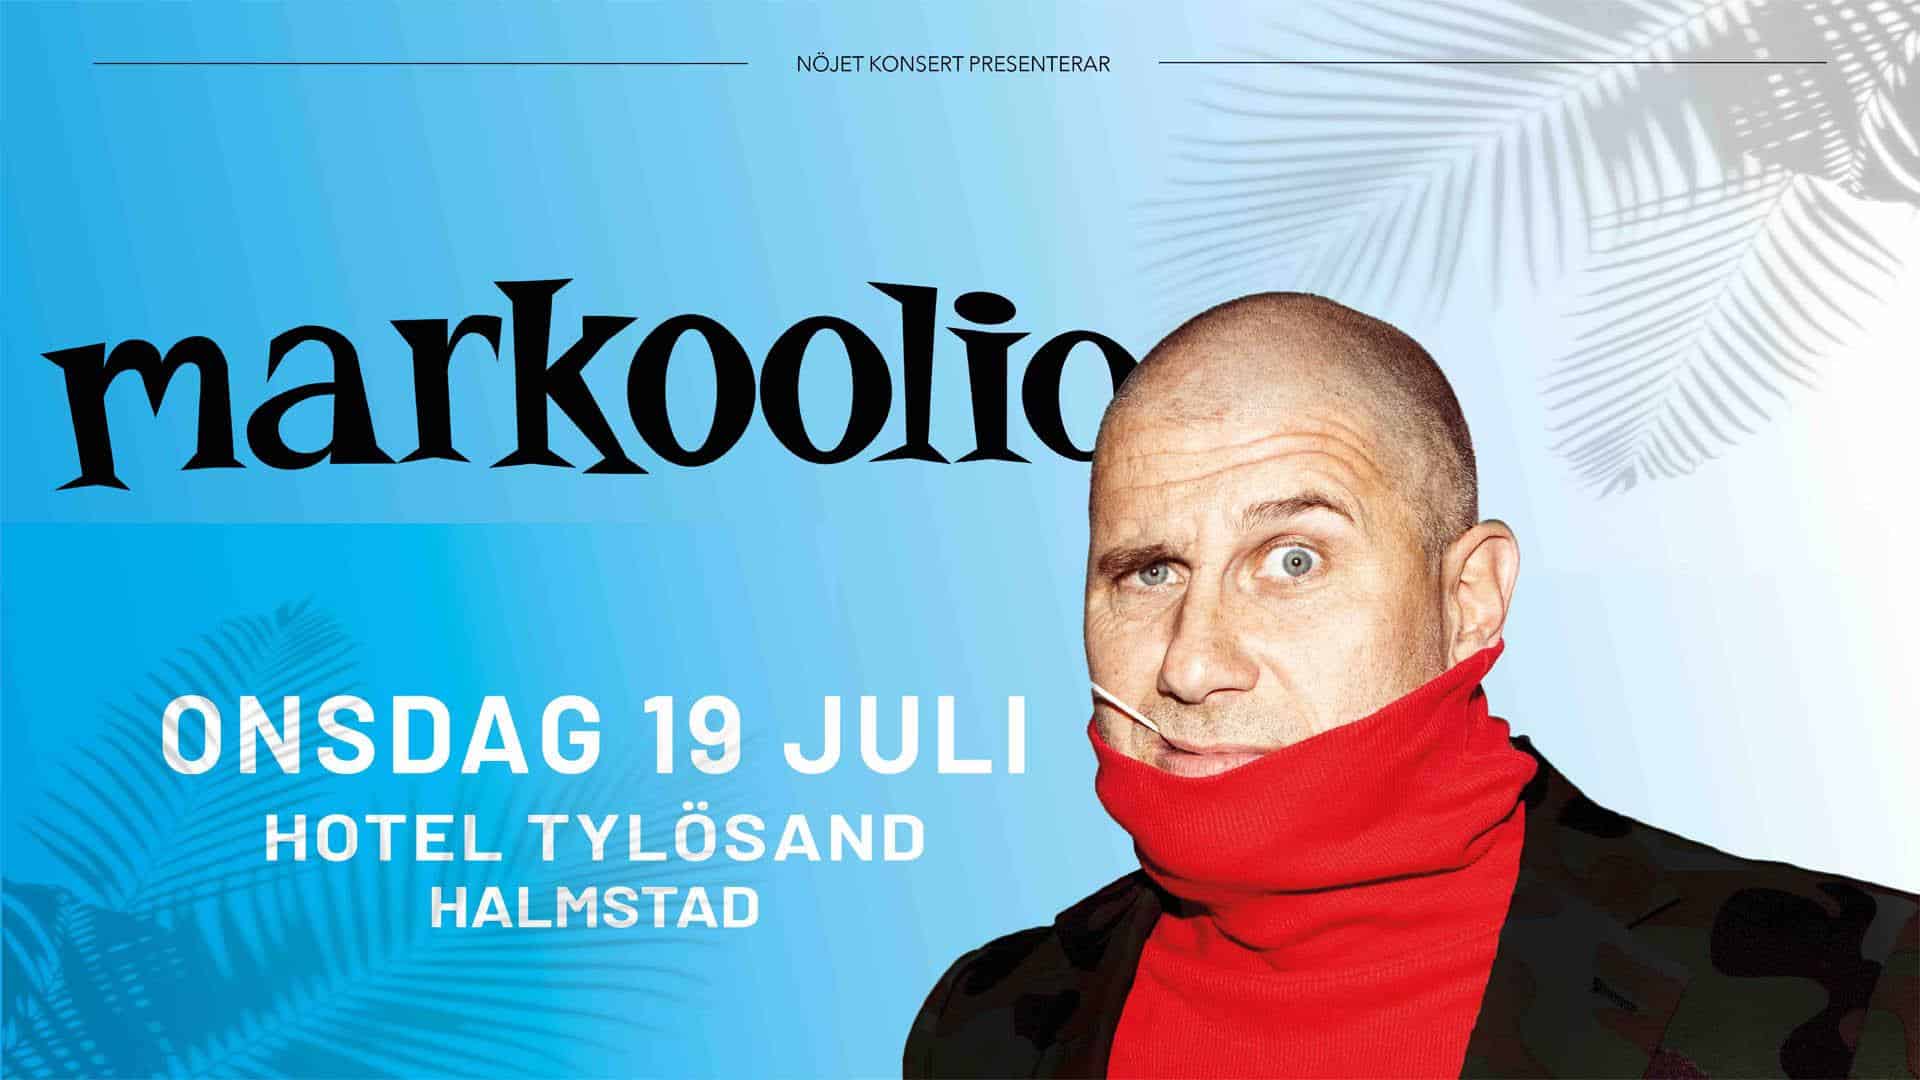 Markoolio Halmstad Tylosand artist webb